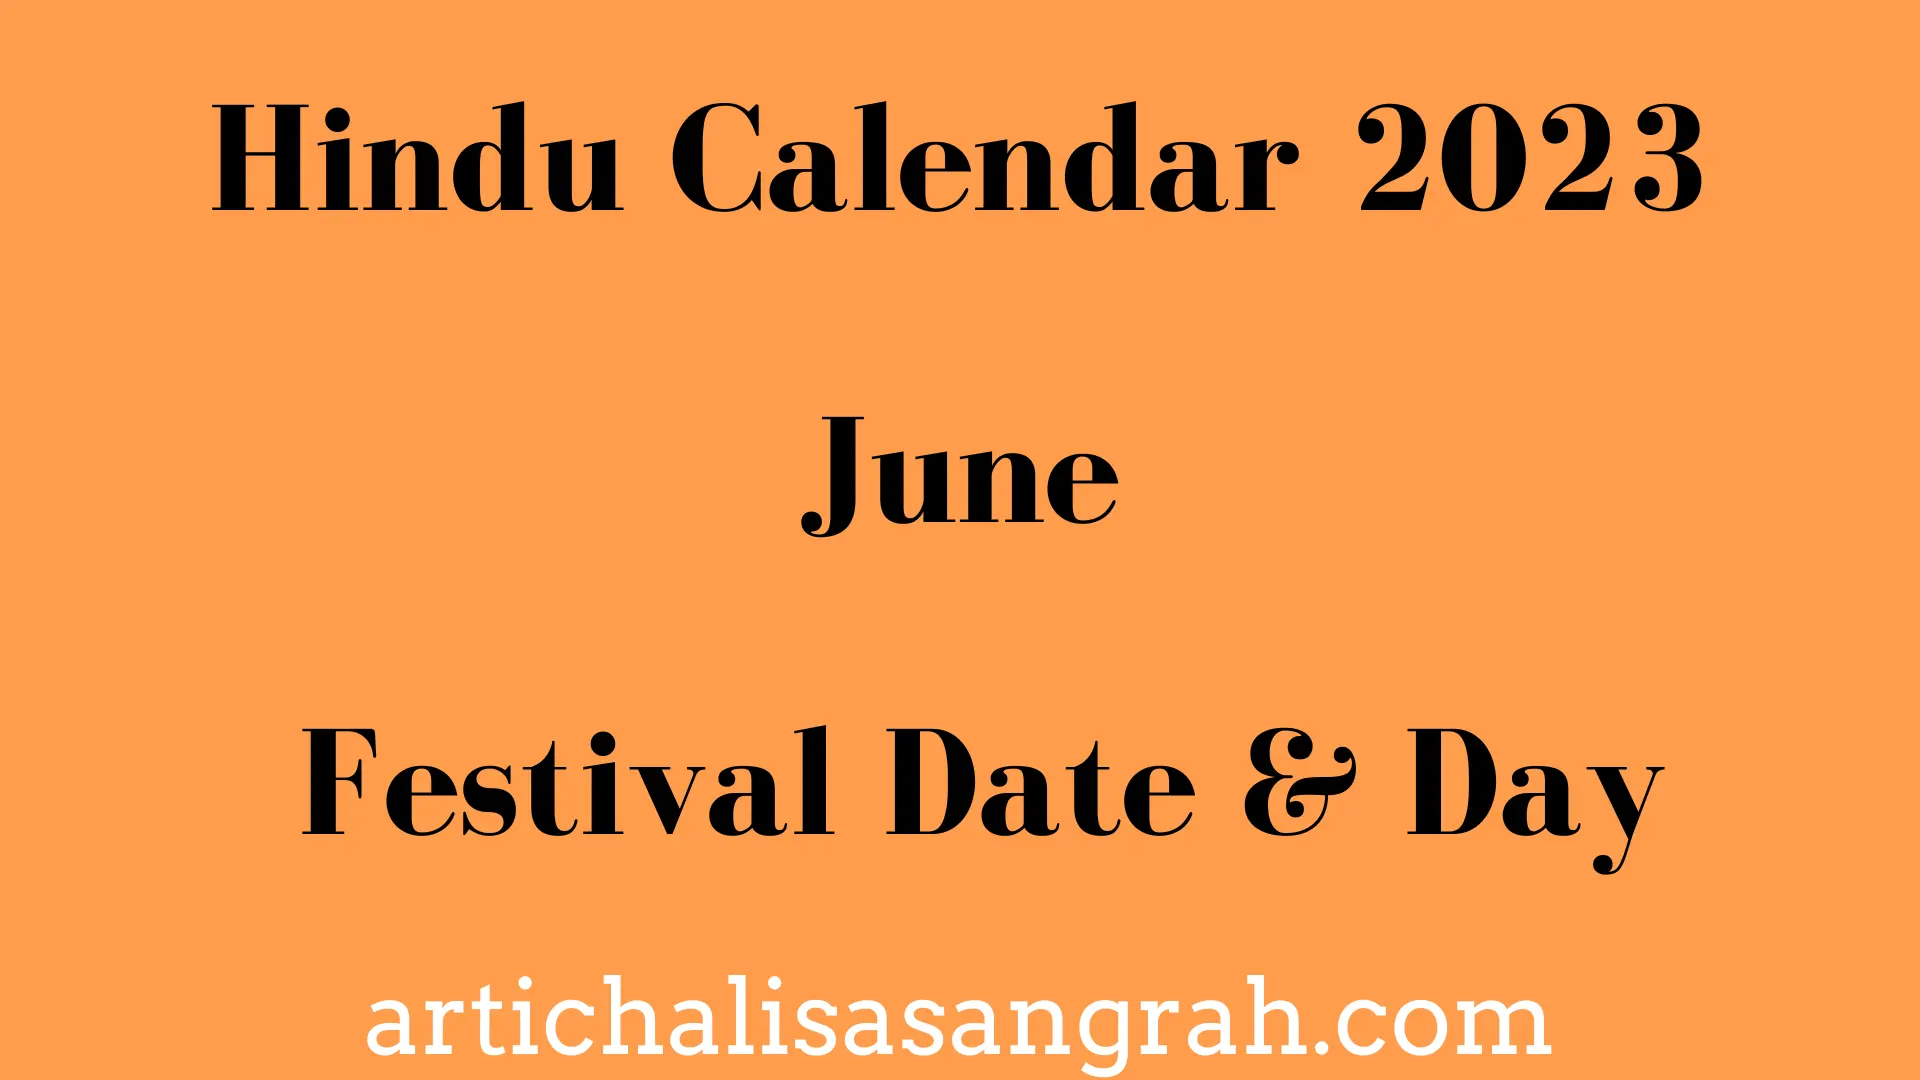 Hindu Calendar June 2023 Arti Chalisa Sangrah